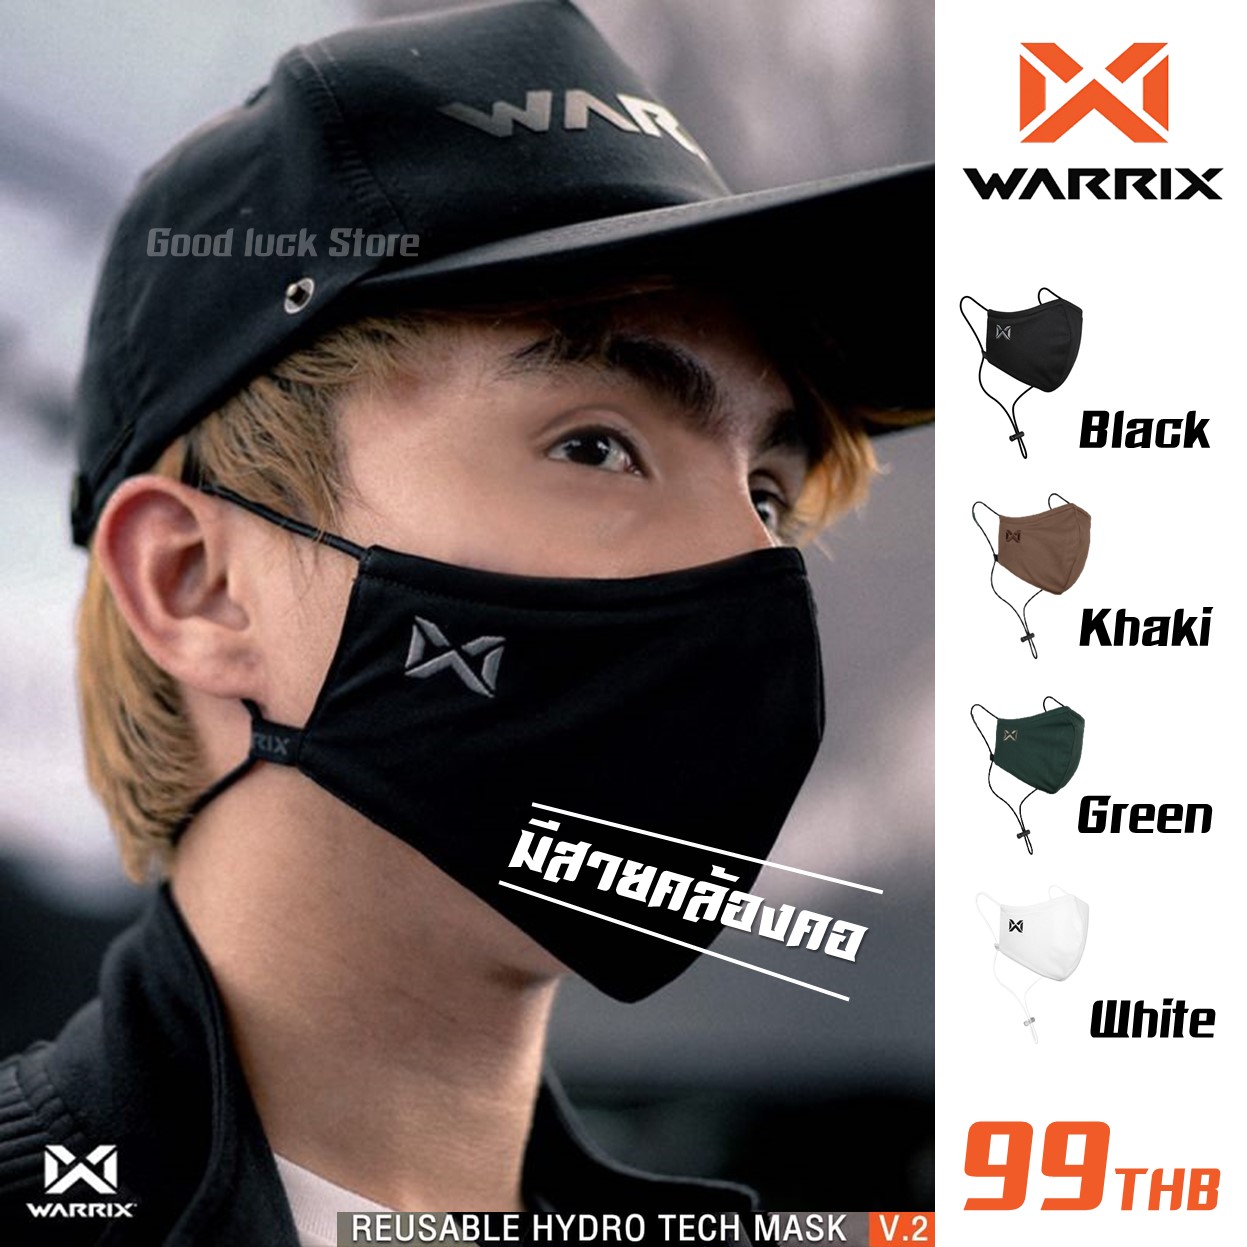 Warrix หน้ากากผ้า วอริกซ์ [แท้ 100%] แบบมีสายคล้องคอ Reusable Hydro-Tech Mask V.2  ใส่สบาย ไม่อึดอัด หายใจสะดวก